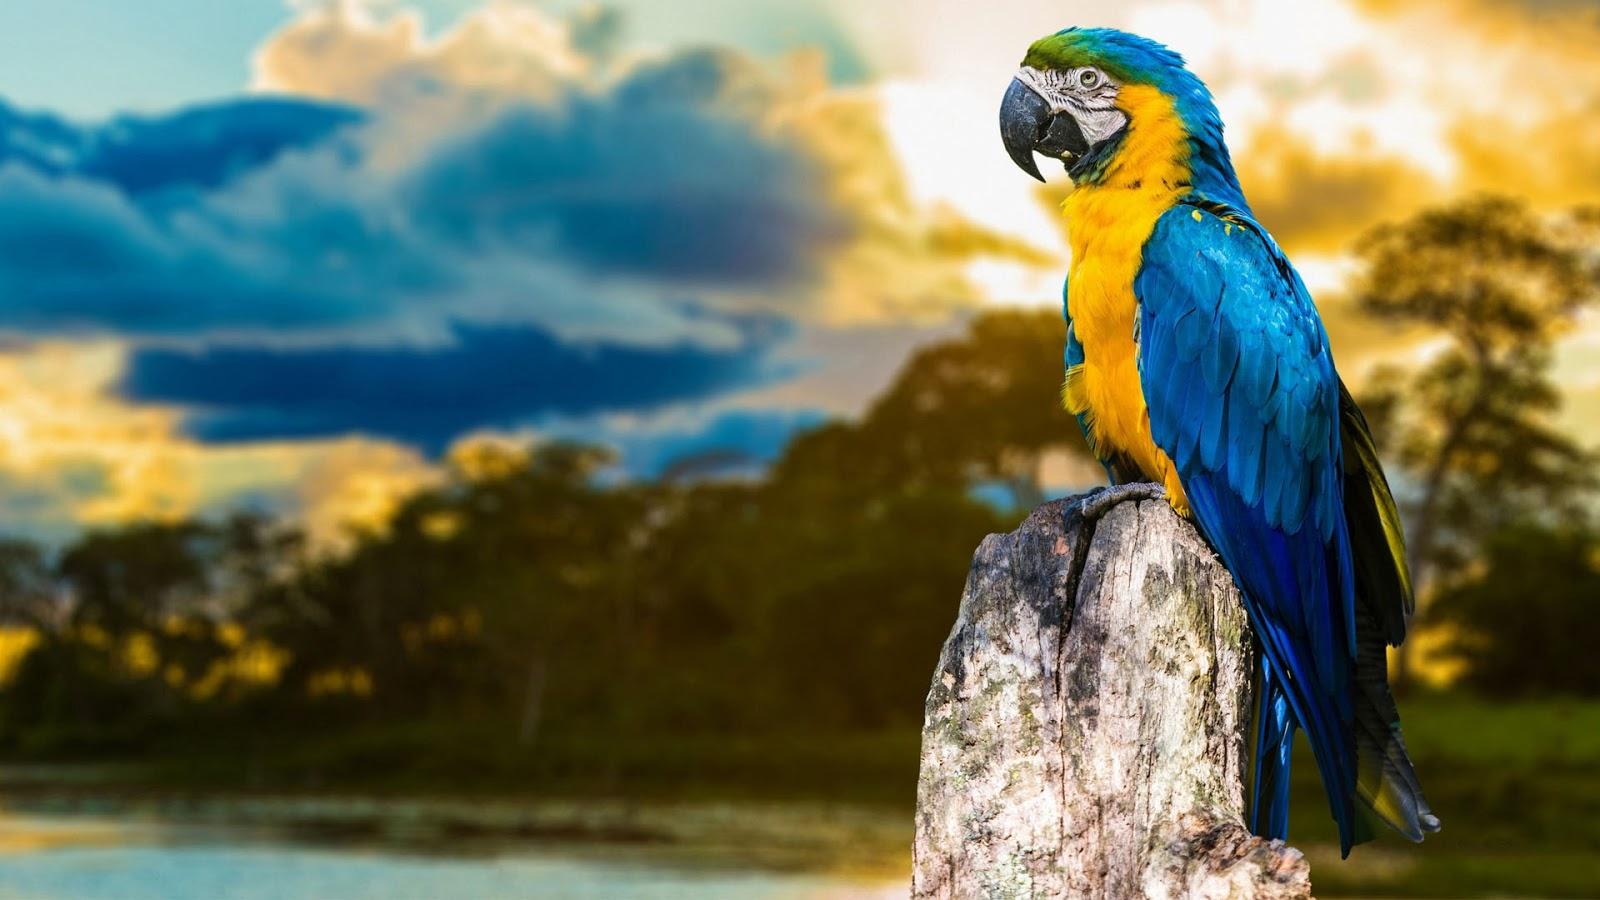 بک گراند طوطی Macaw به رنگ آبی و زرد خوشگل مختص دسکتاپ